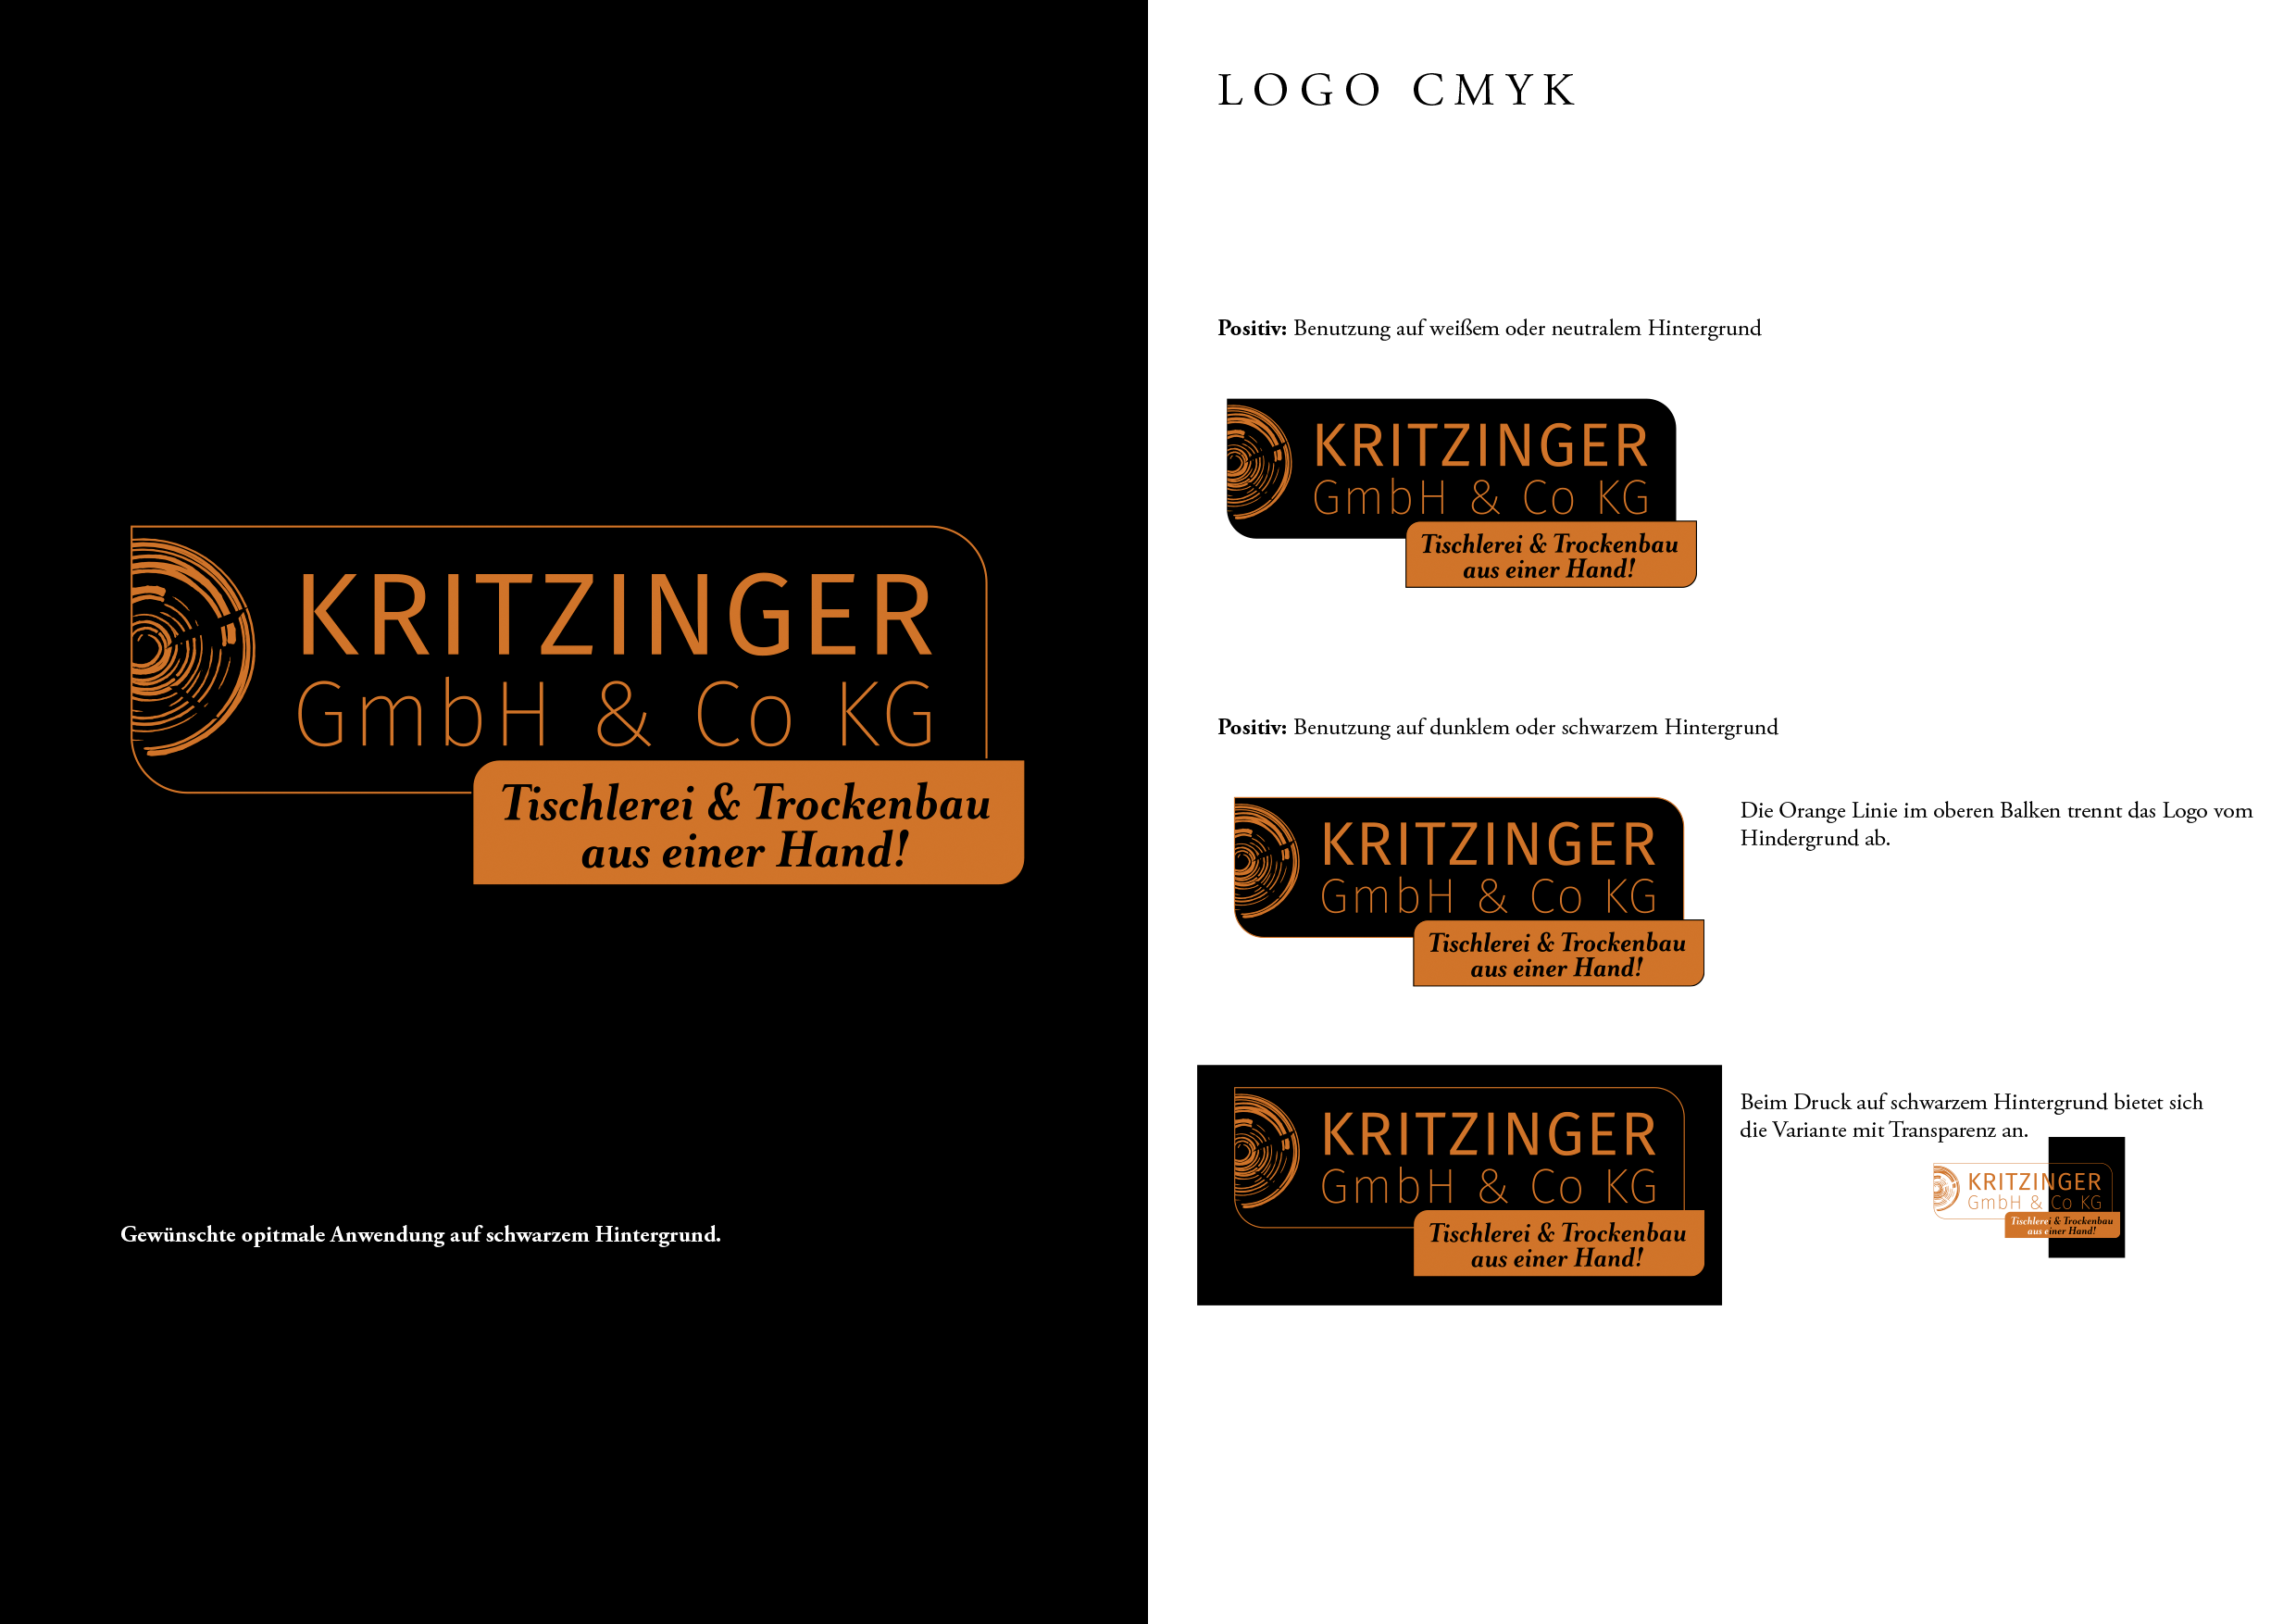 Design Manual, addesign, kritzinger, kritzinger lauterach